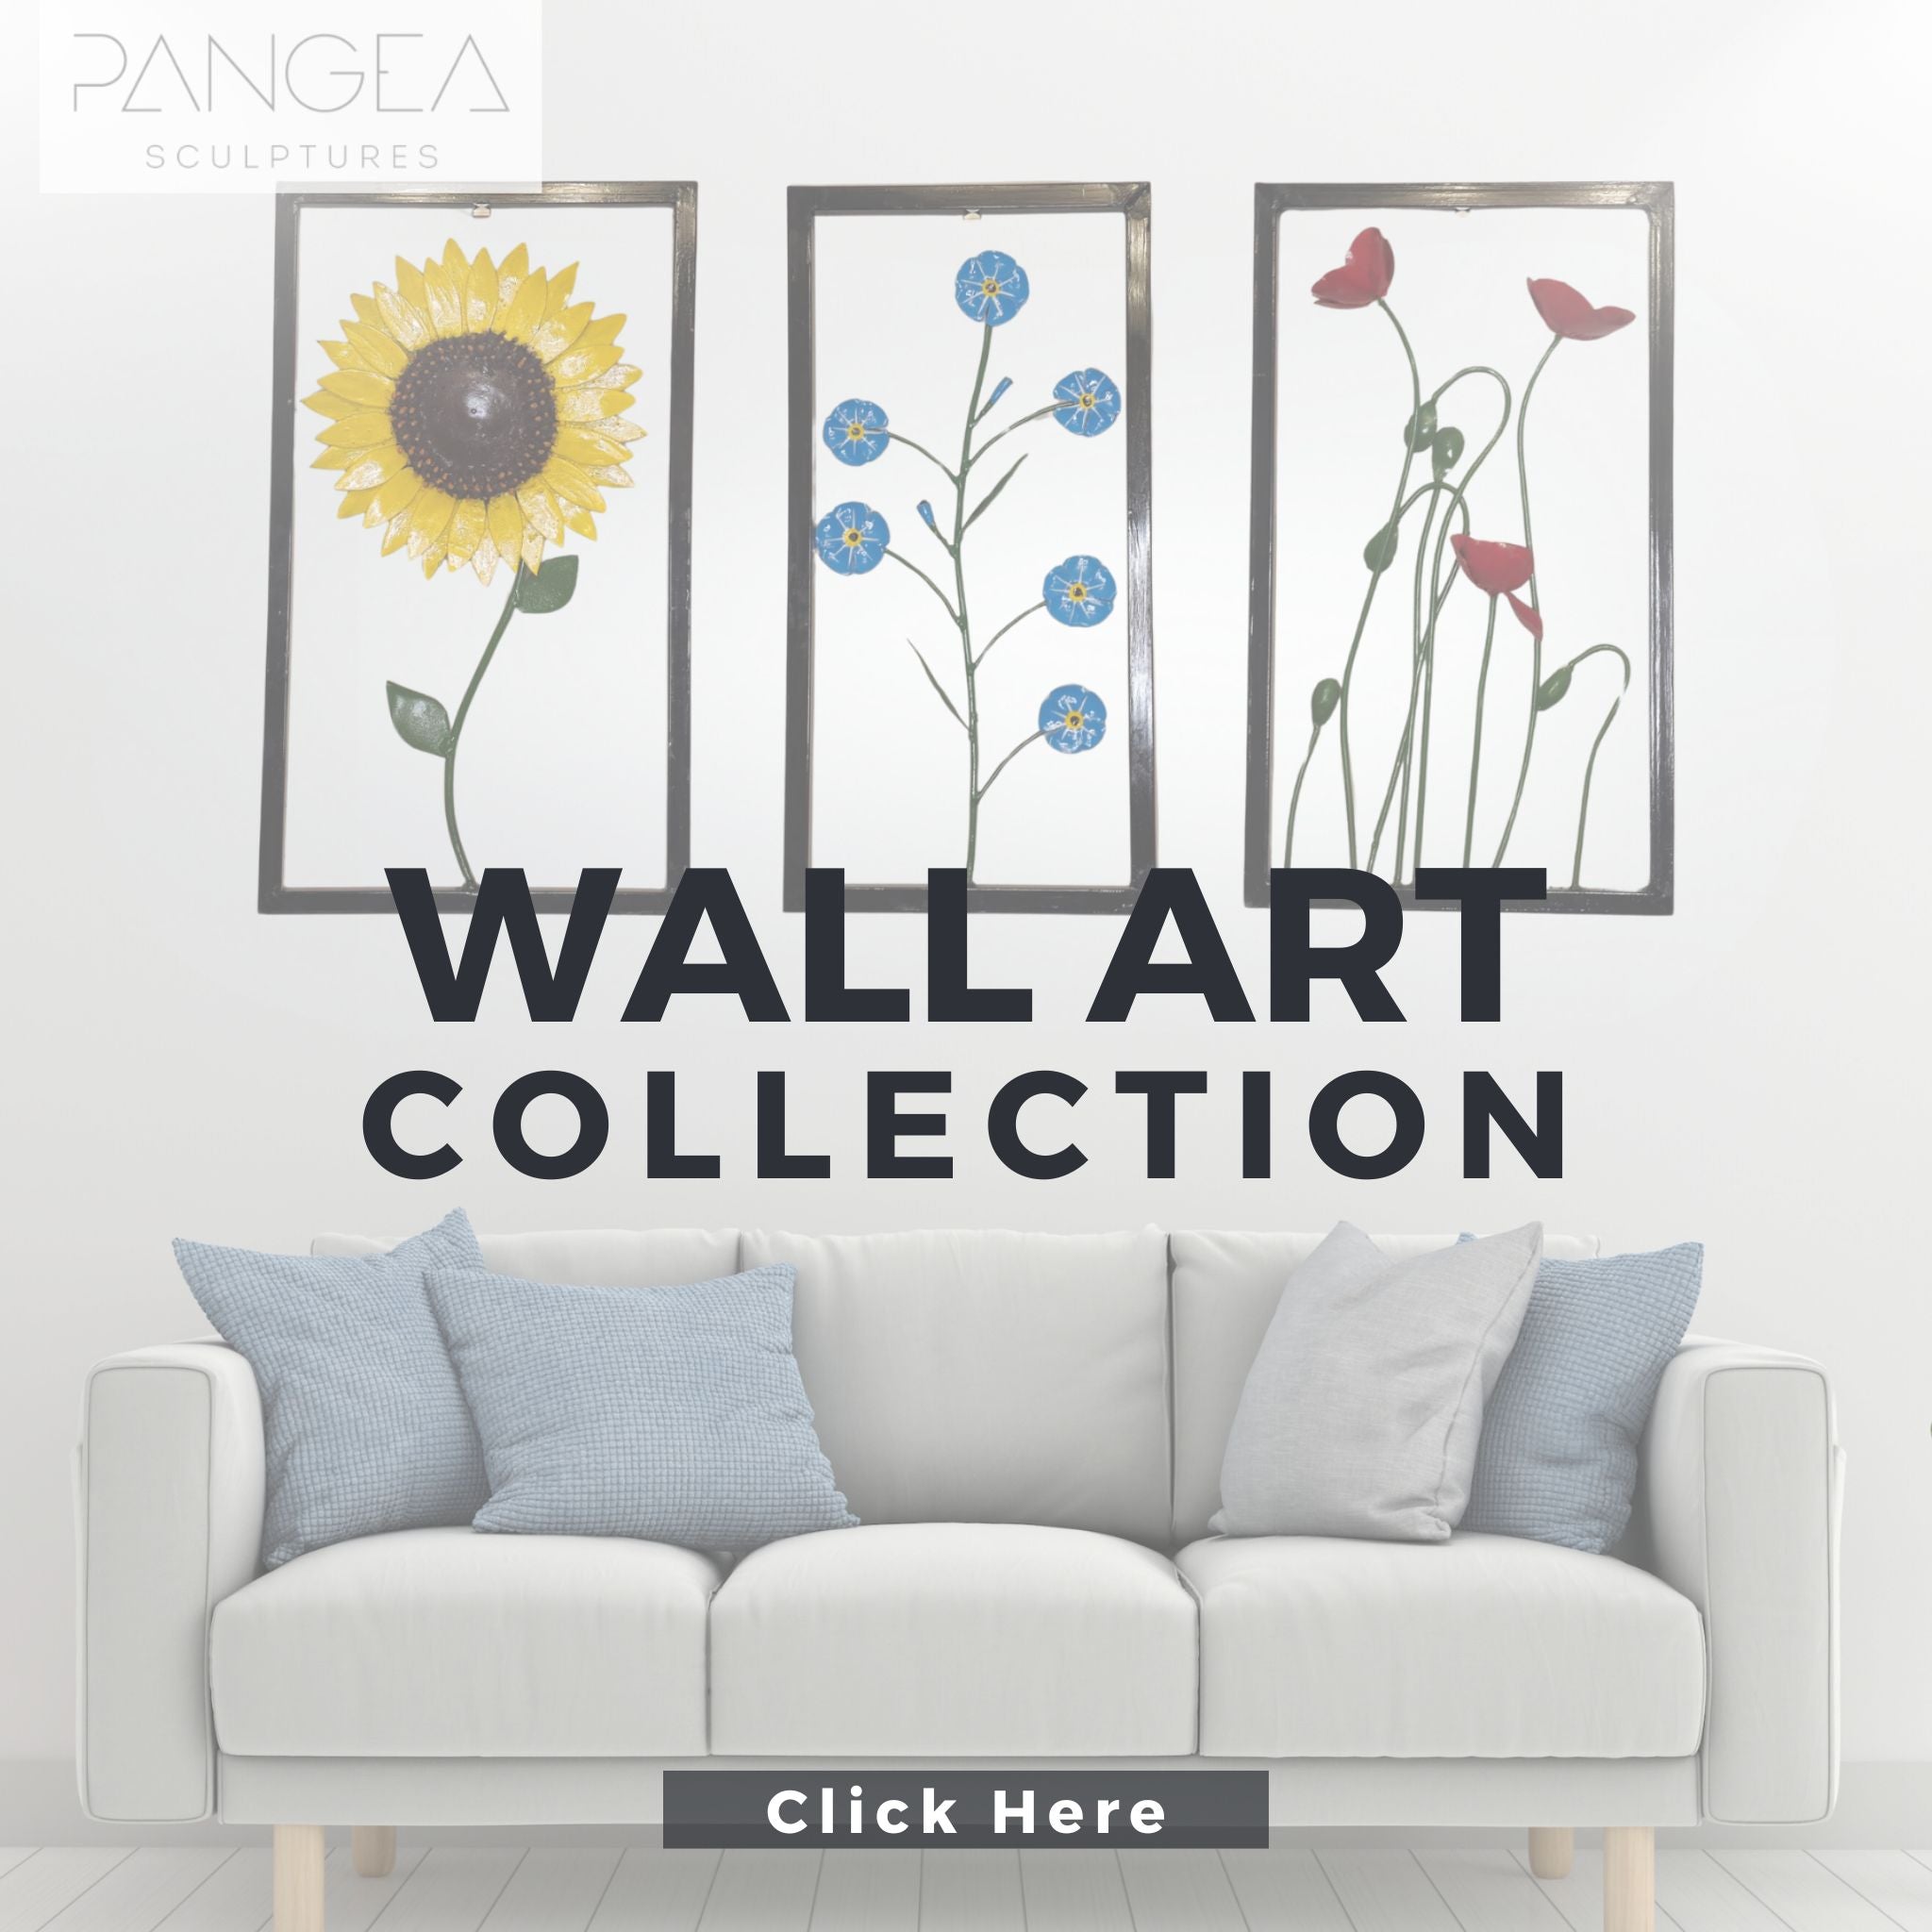 Wall Art - Pangea Sculptures